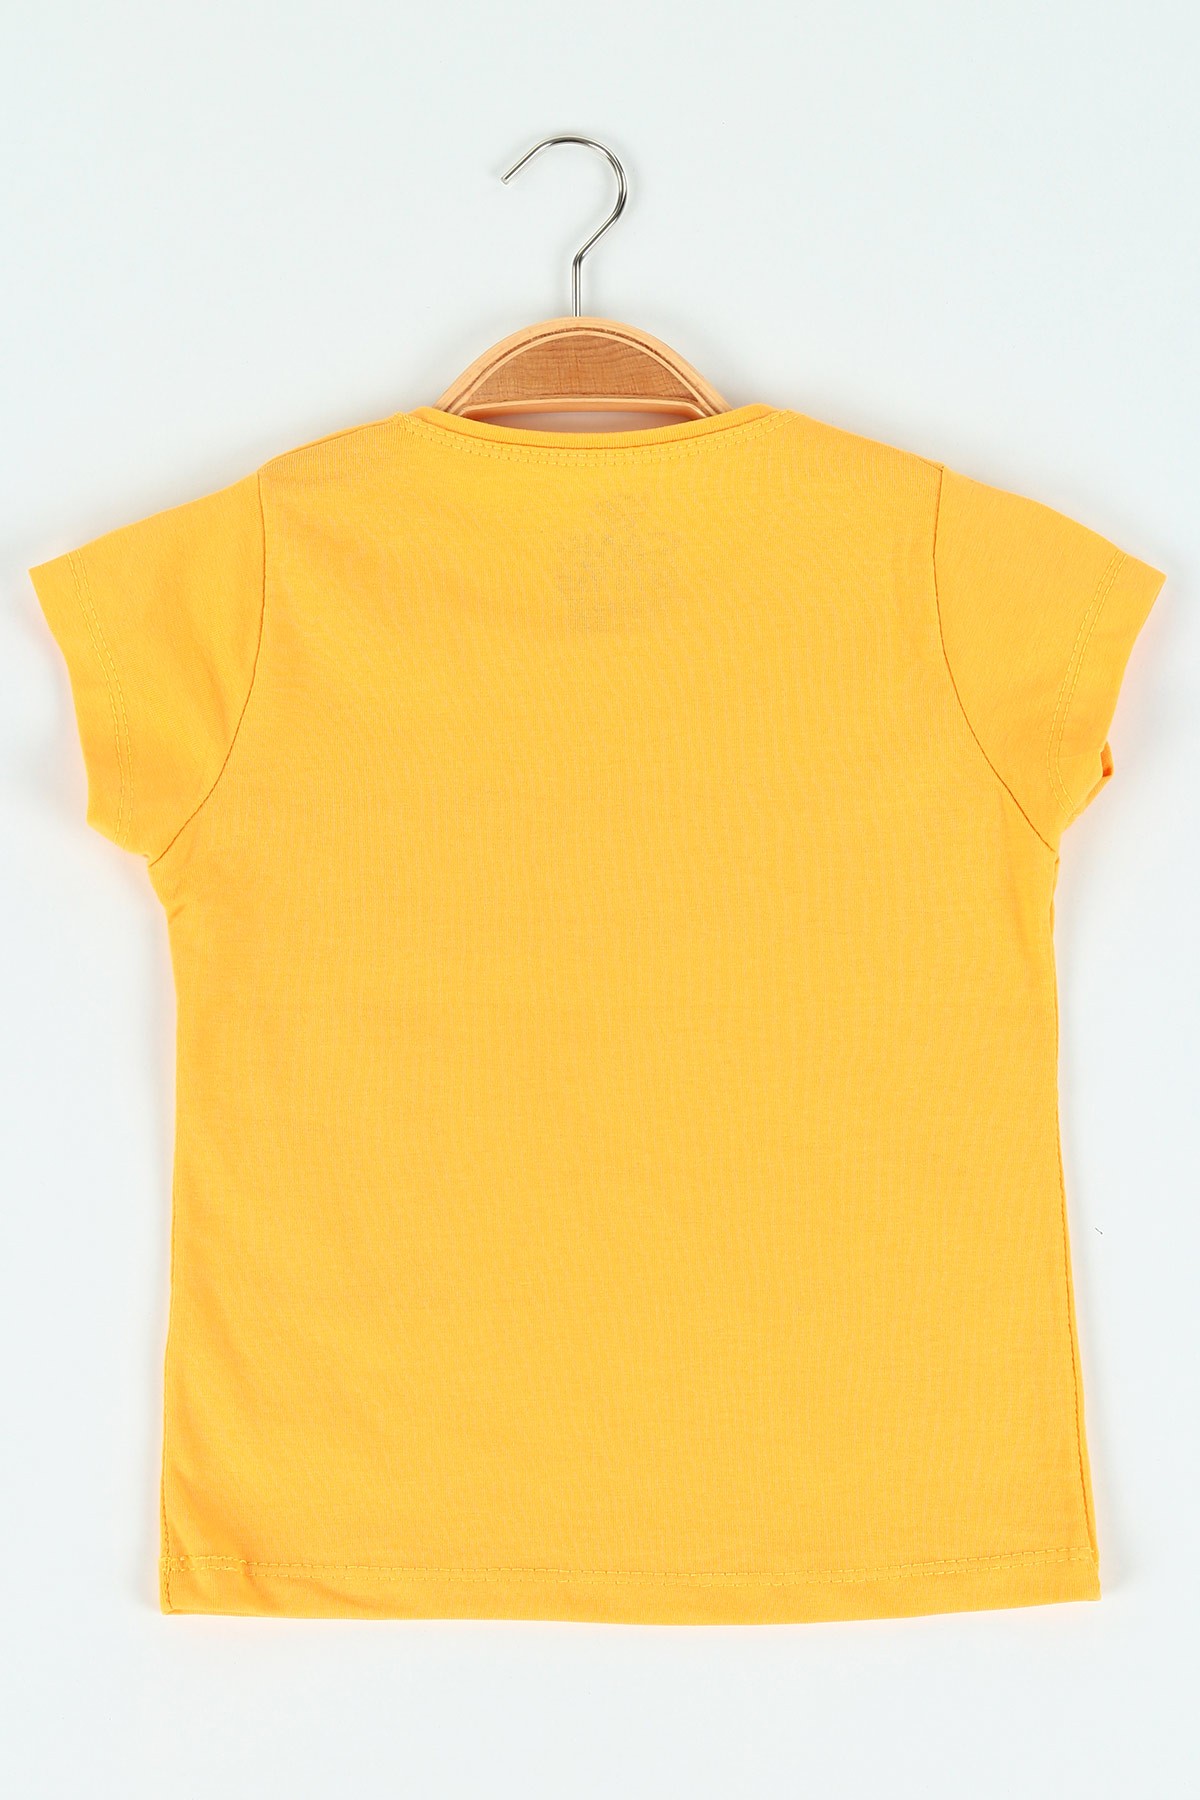 Sarı (3-7 yaş)Dream Baskılı Kız Çocuk Tişört 119983